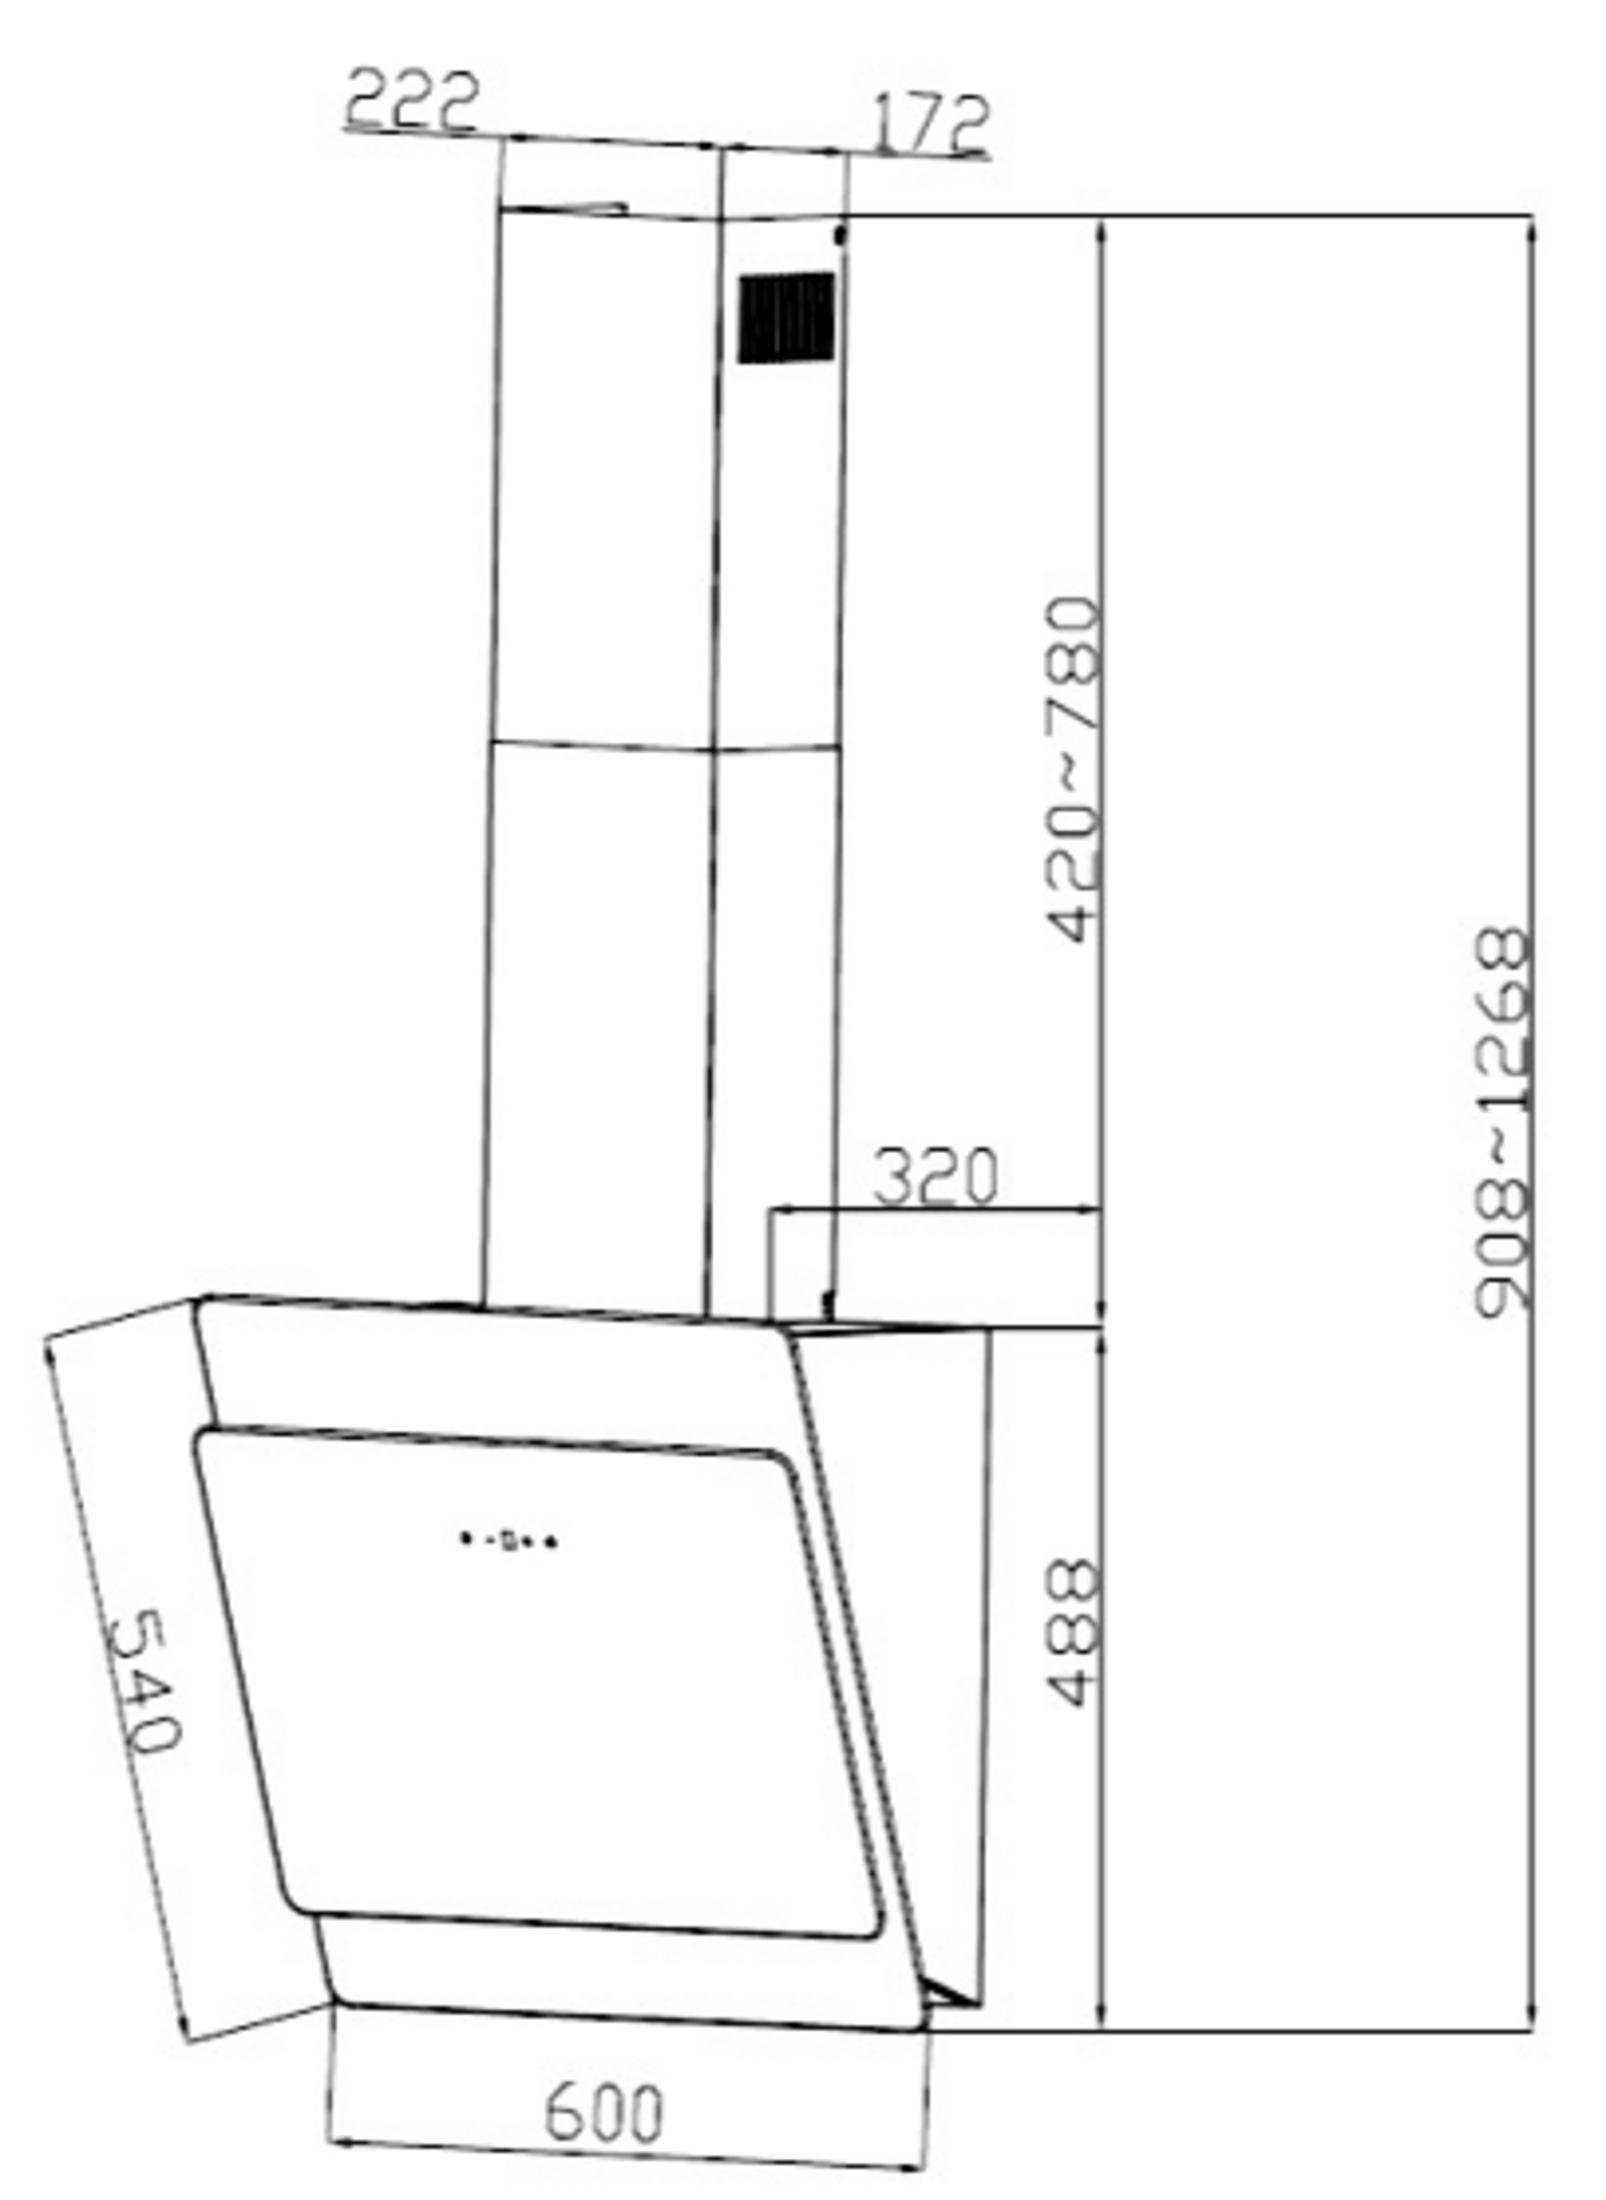 PKM S3-60 ABTZ, Dunstabzugshaube (600 mm mm 320 tief) breit